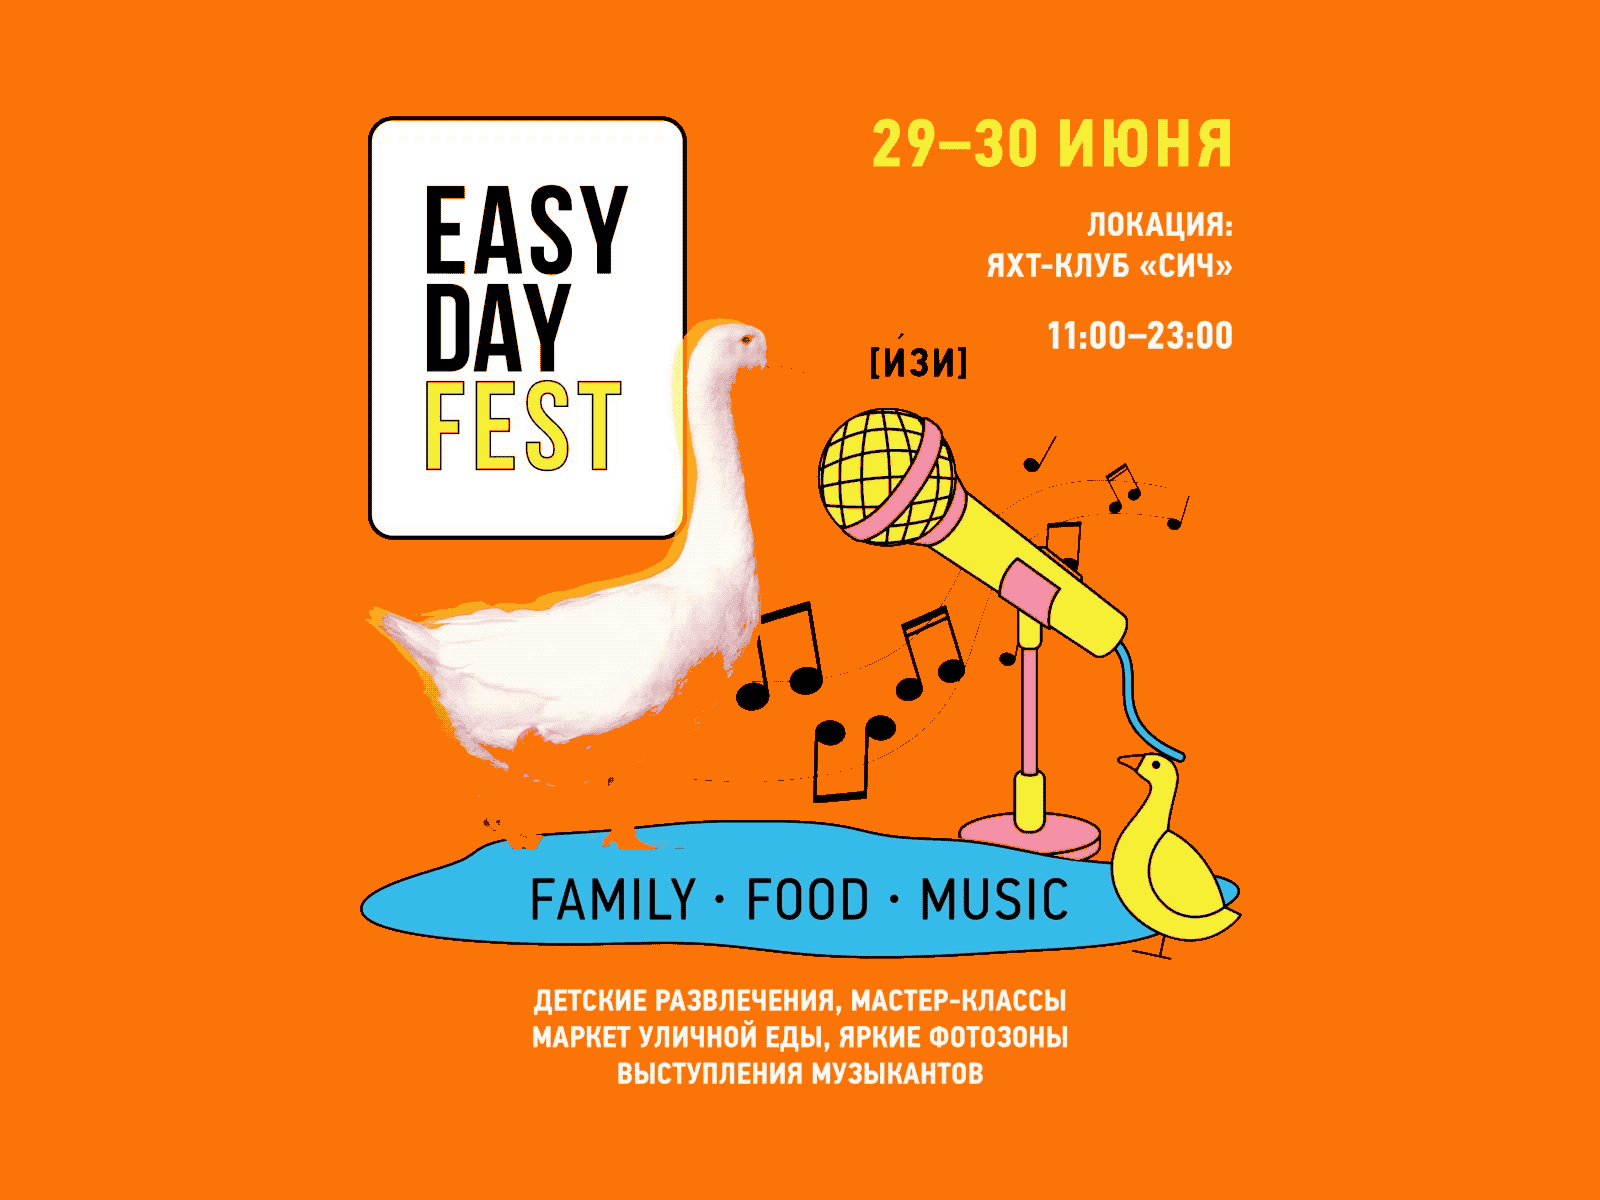 Easy day fest animation branding design illustration illustrator logo motion design vector